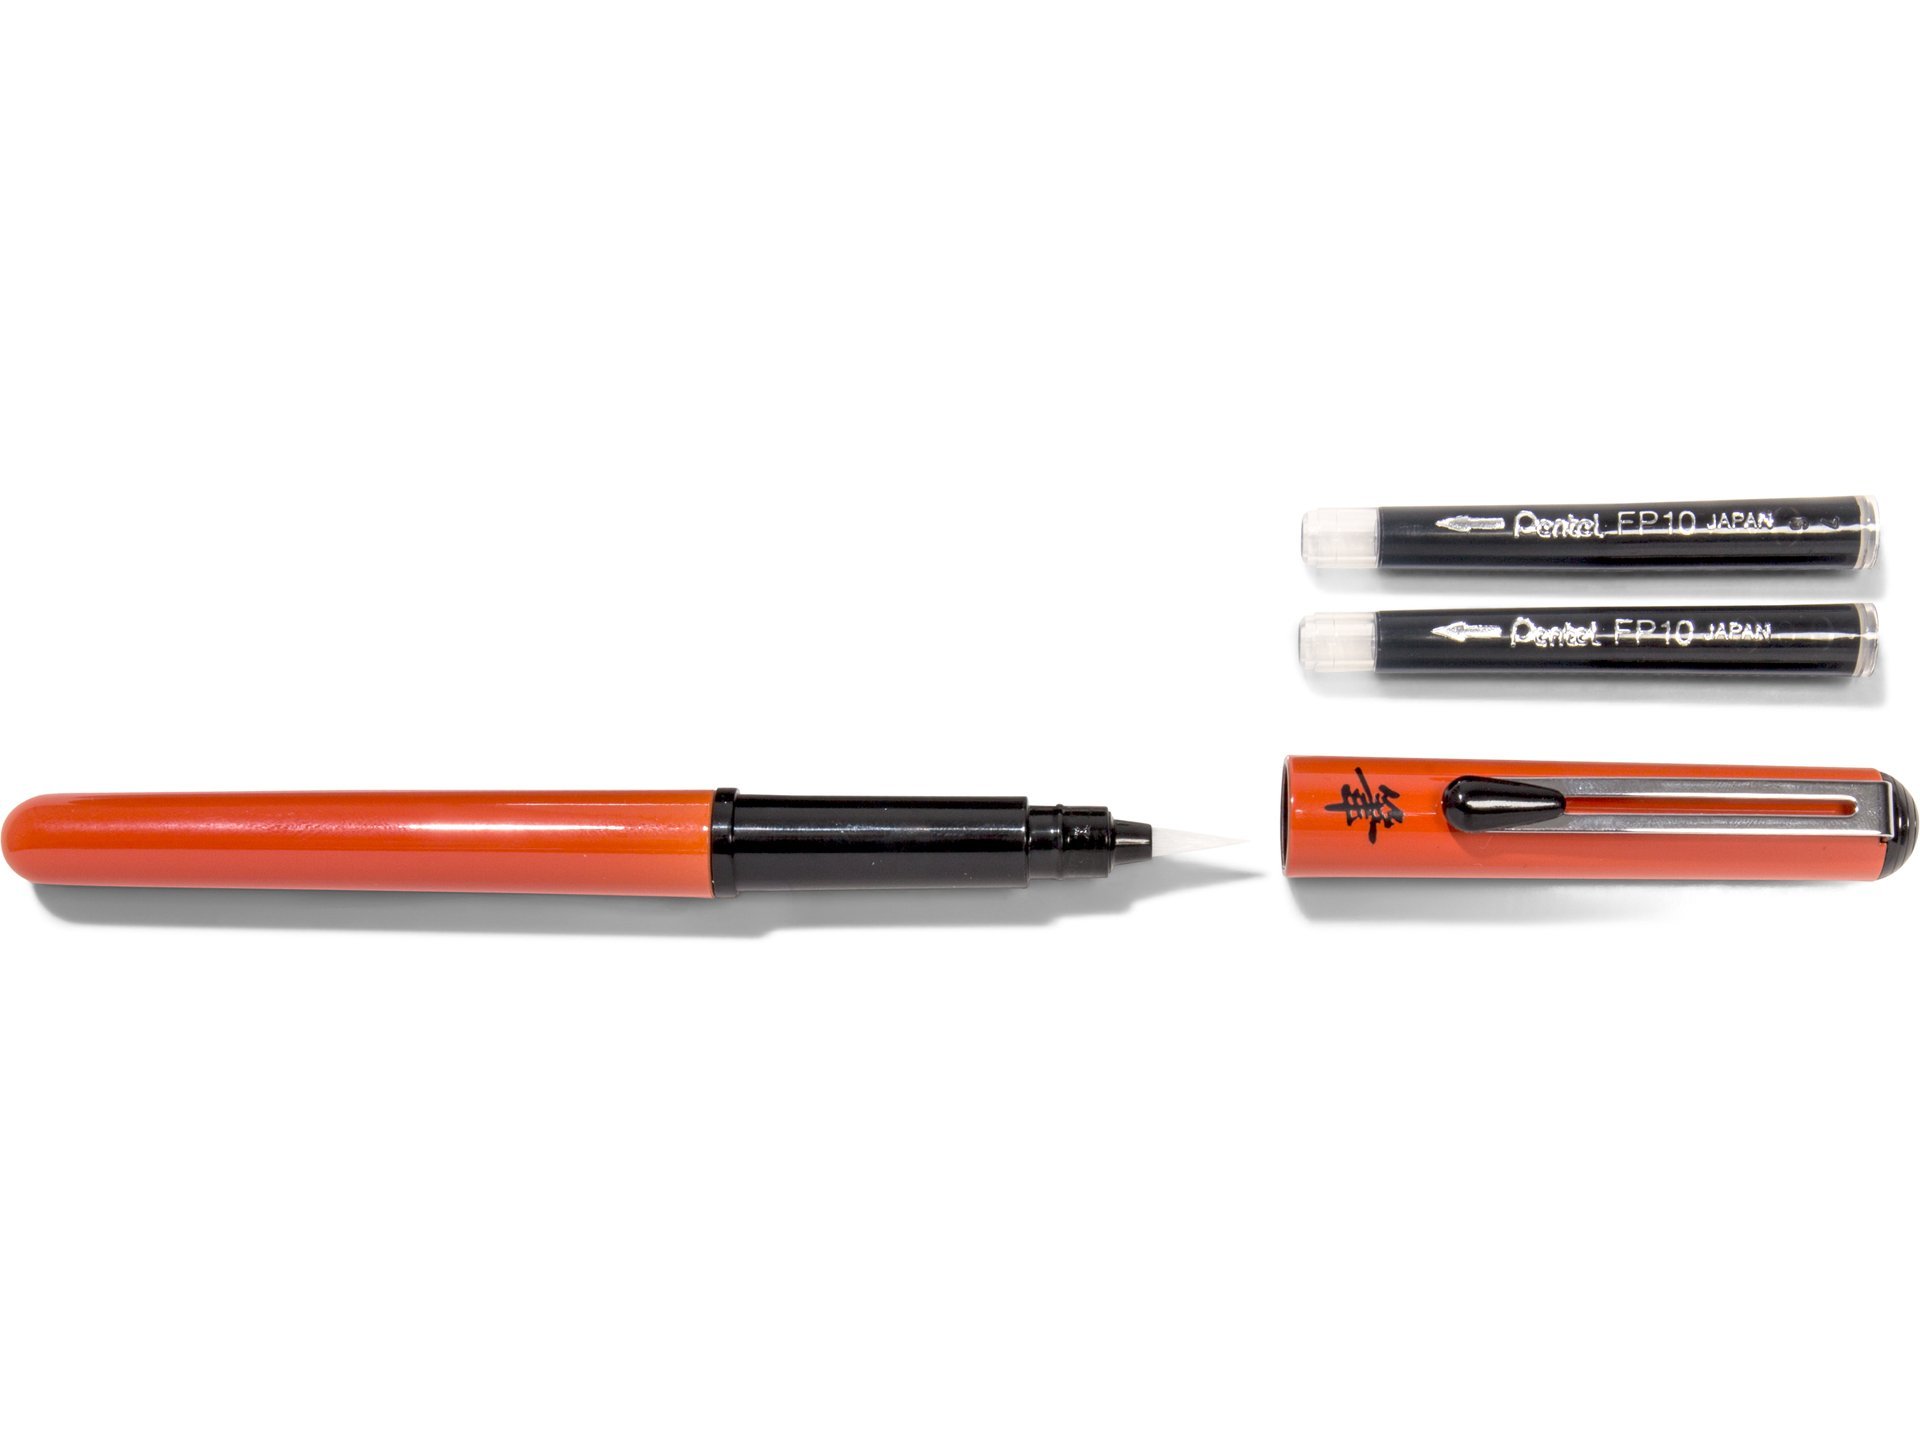 16) Feutre Pinceau Pentel Colour Brush GFL-140 Jaune Orange